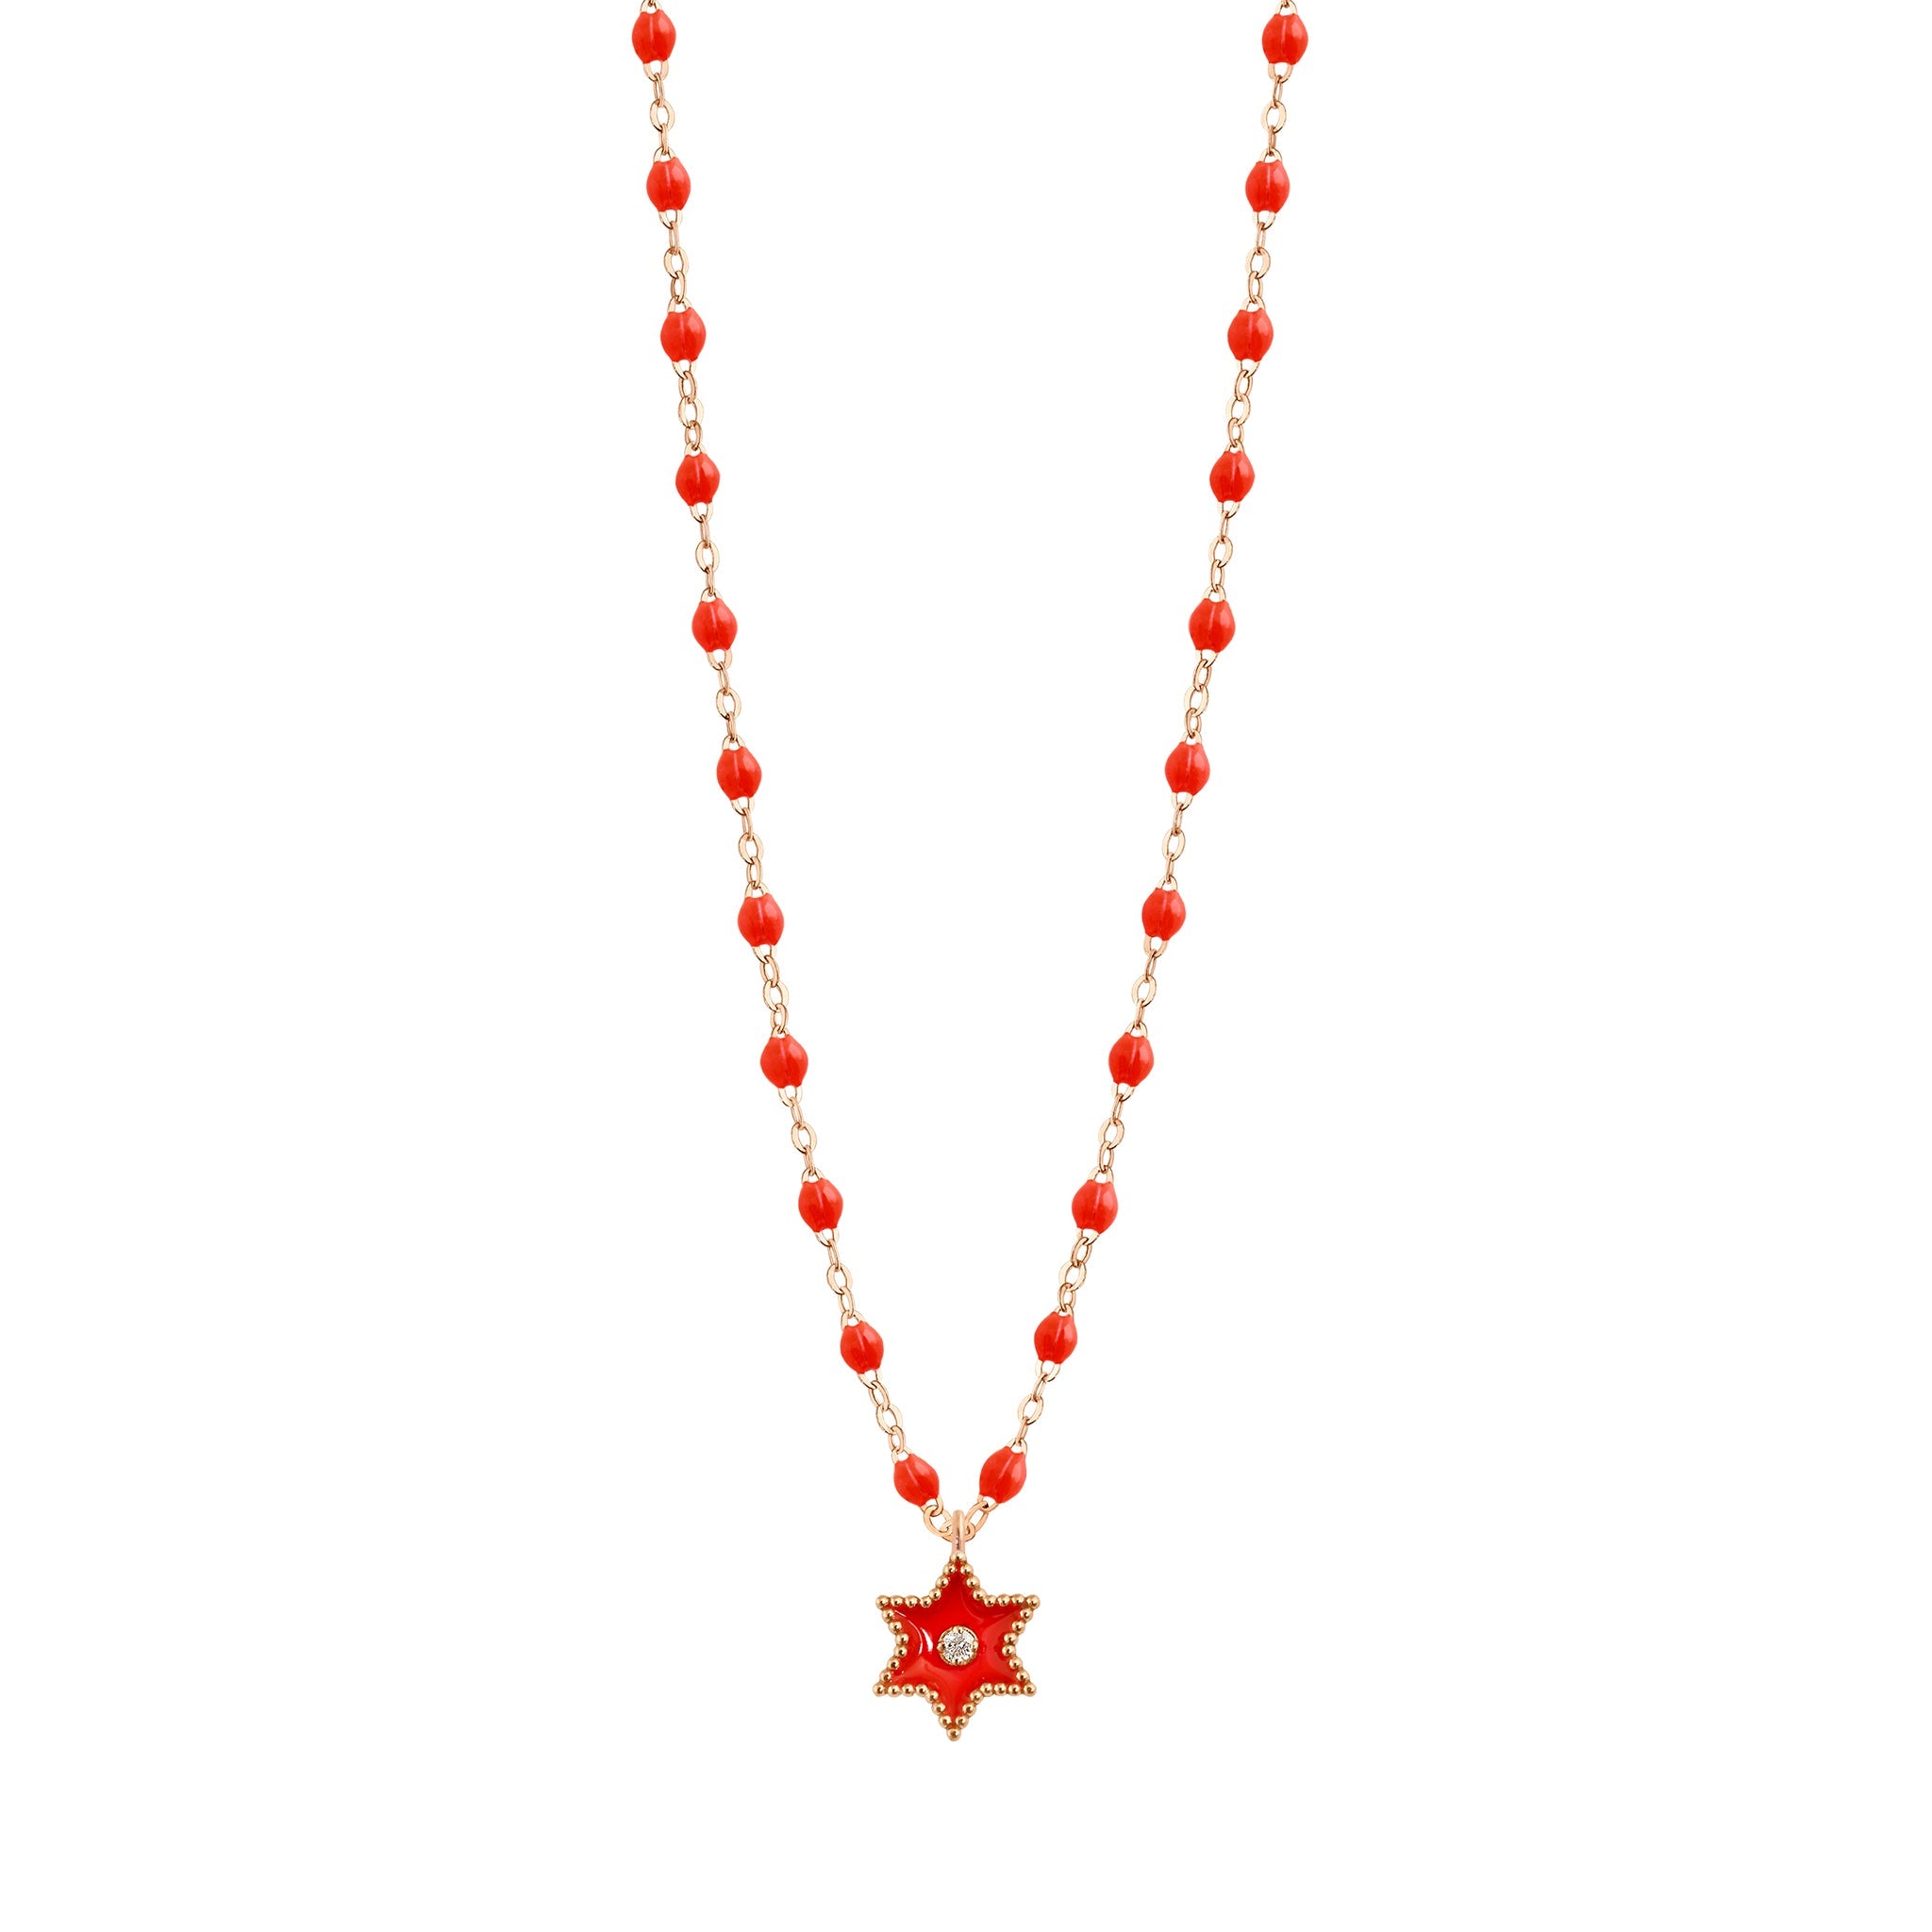 Collier Etoile Star résine corail, diamant, or rose, 42 cm pirate Référence :  b1st001r5842di -1